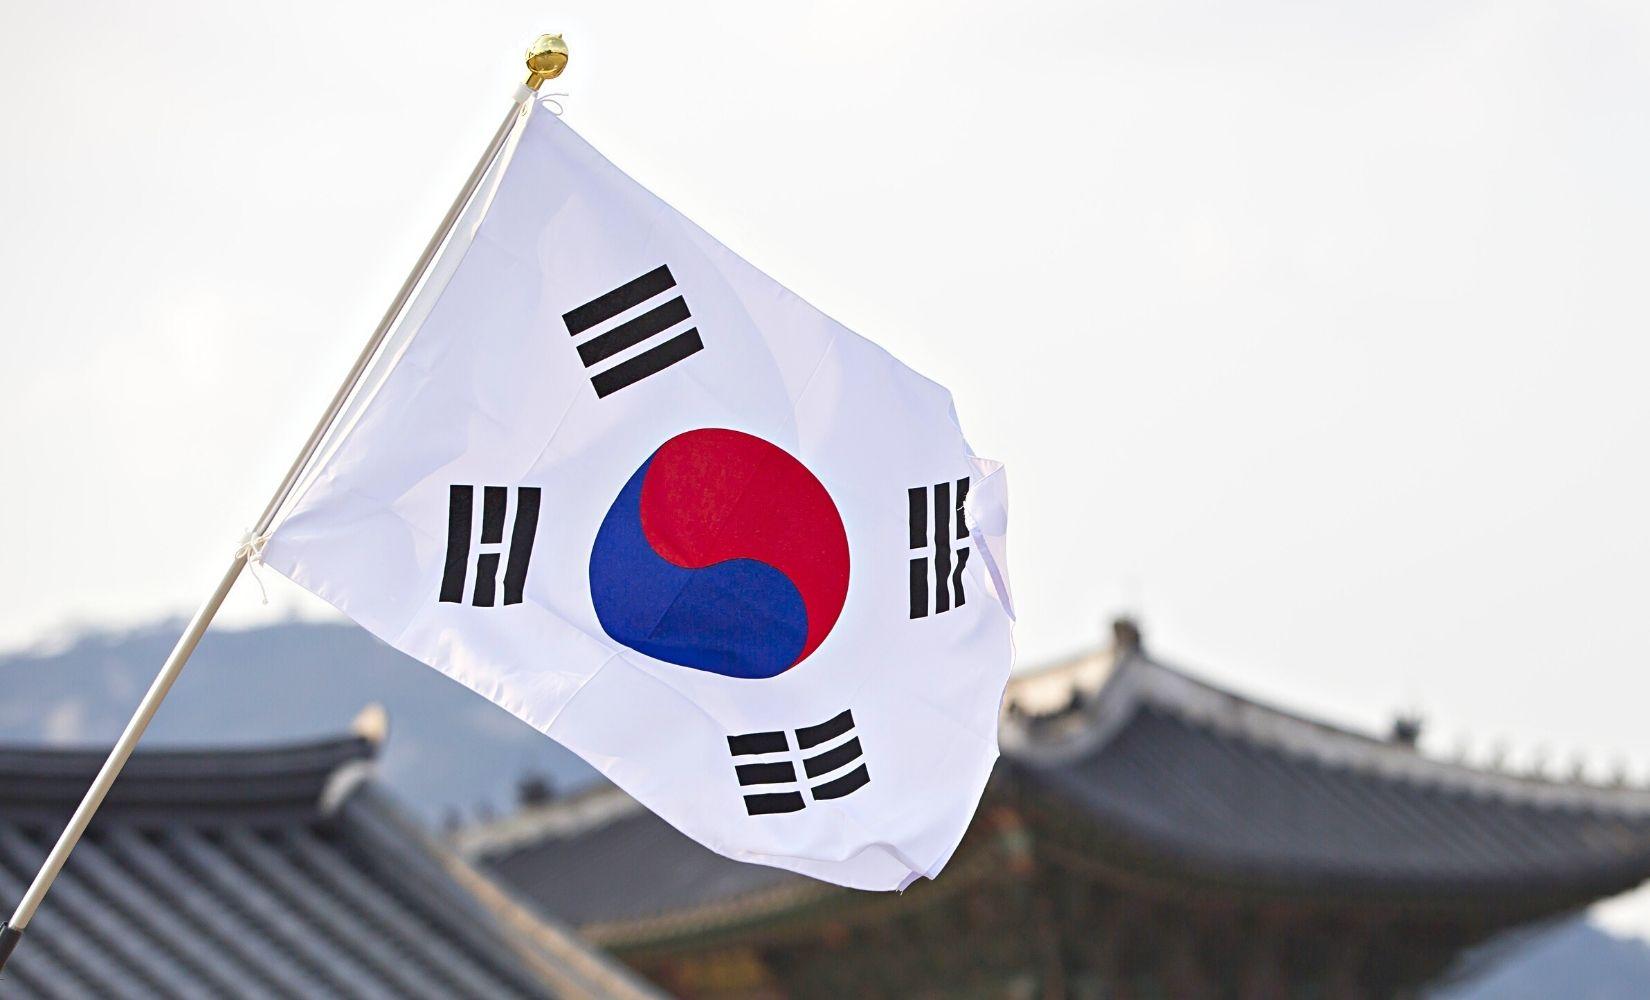 Taegeukgi - Quốc kỳ Hàn Quốc: Taegeukgi là biểu tượng cho tinh thần của đất nước Hàn Quốc. Với ý nghĩa sâu sắc và cao đẹp, quốc kỳ này đã trở thành símbol tinh thần cho các thế hệ con cháu của đất nước này. Bạn muốn tìm hiểu rõ hơn về Taegeukgi và đất nước Hàn Quốc? Hãy xem hình ảnh liên quan đến từ khóa này.